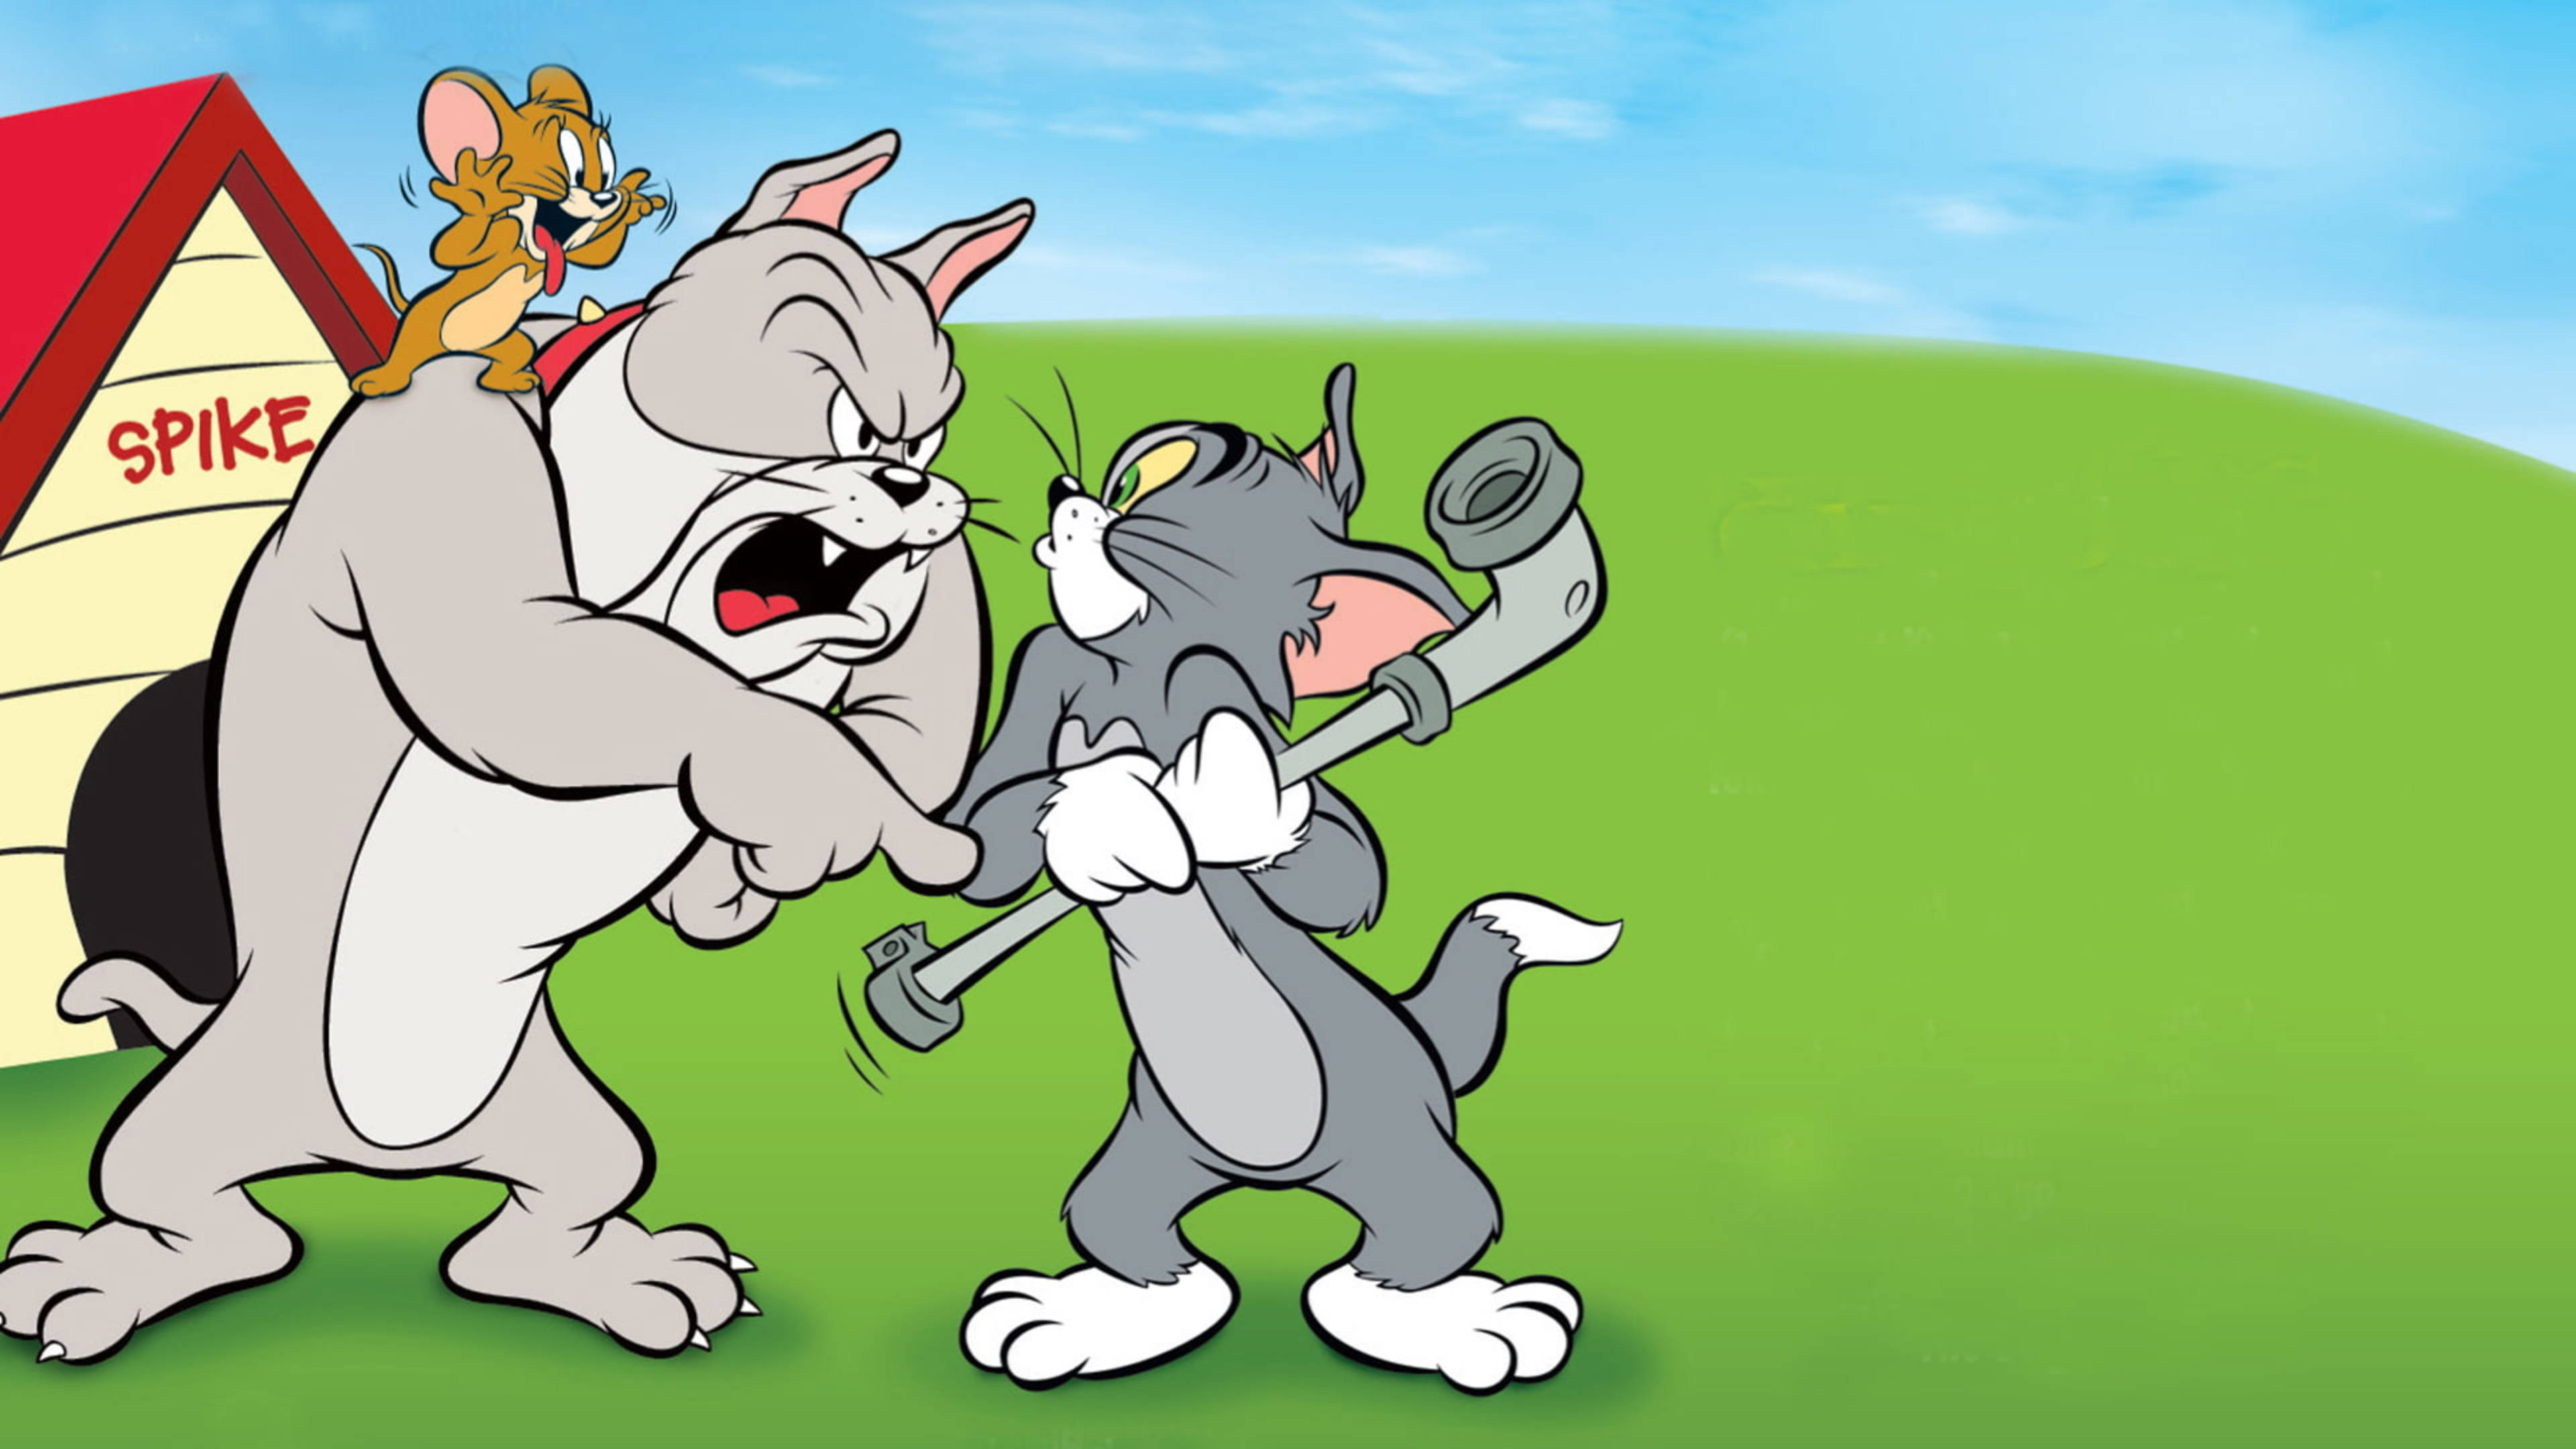 Jerry том и джерри. Tom and Jerry. Том и Джерри Tom and Jerry. Том и Джерри 1995.